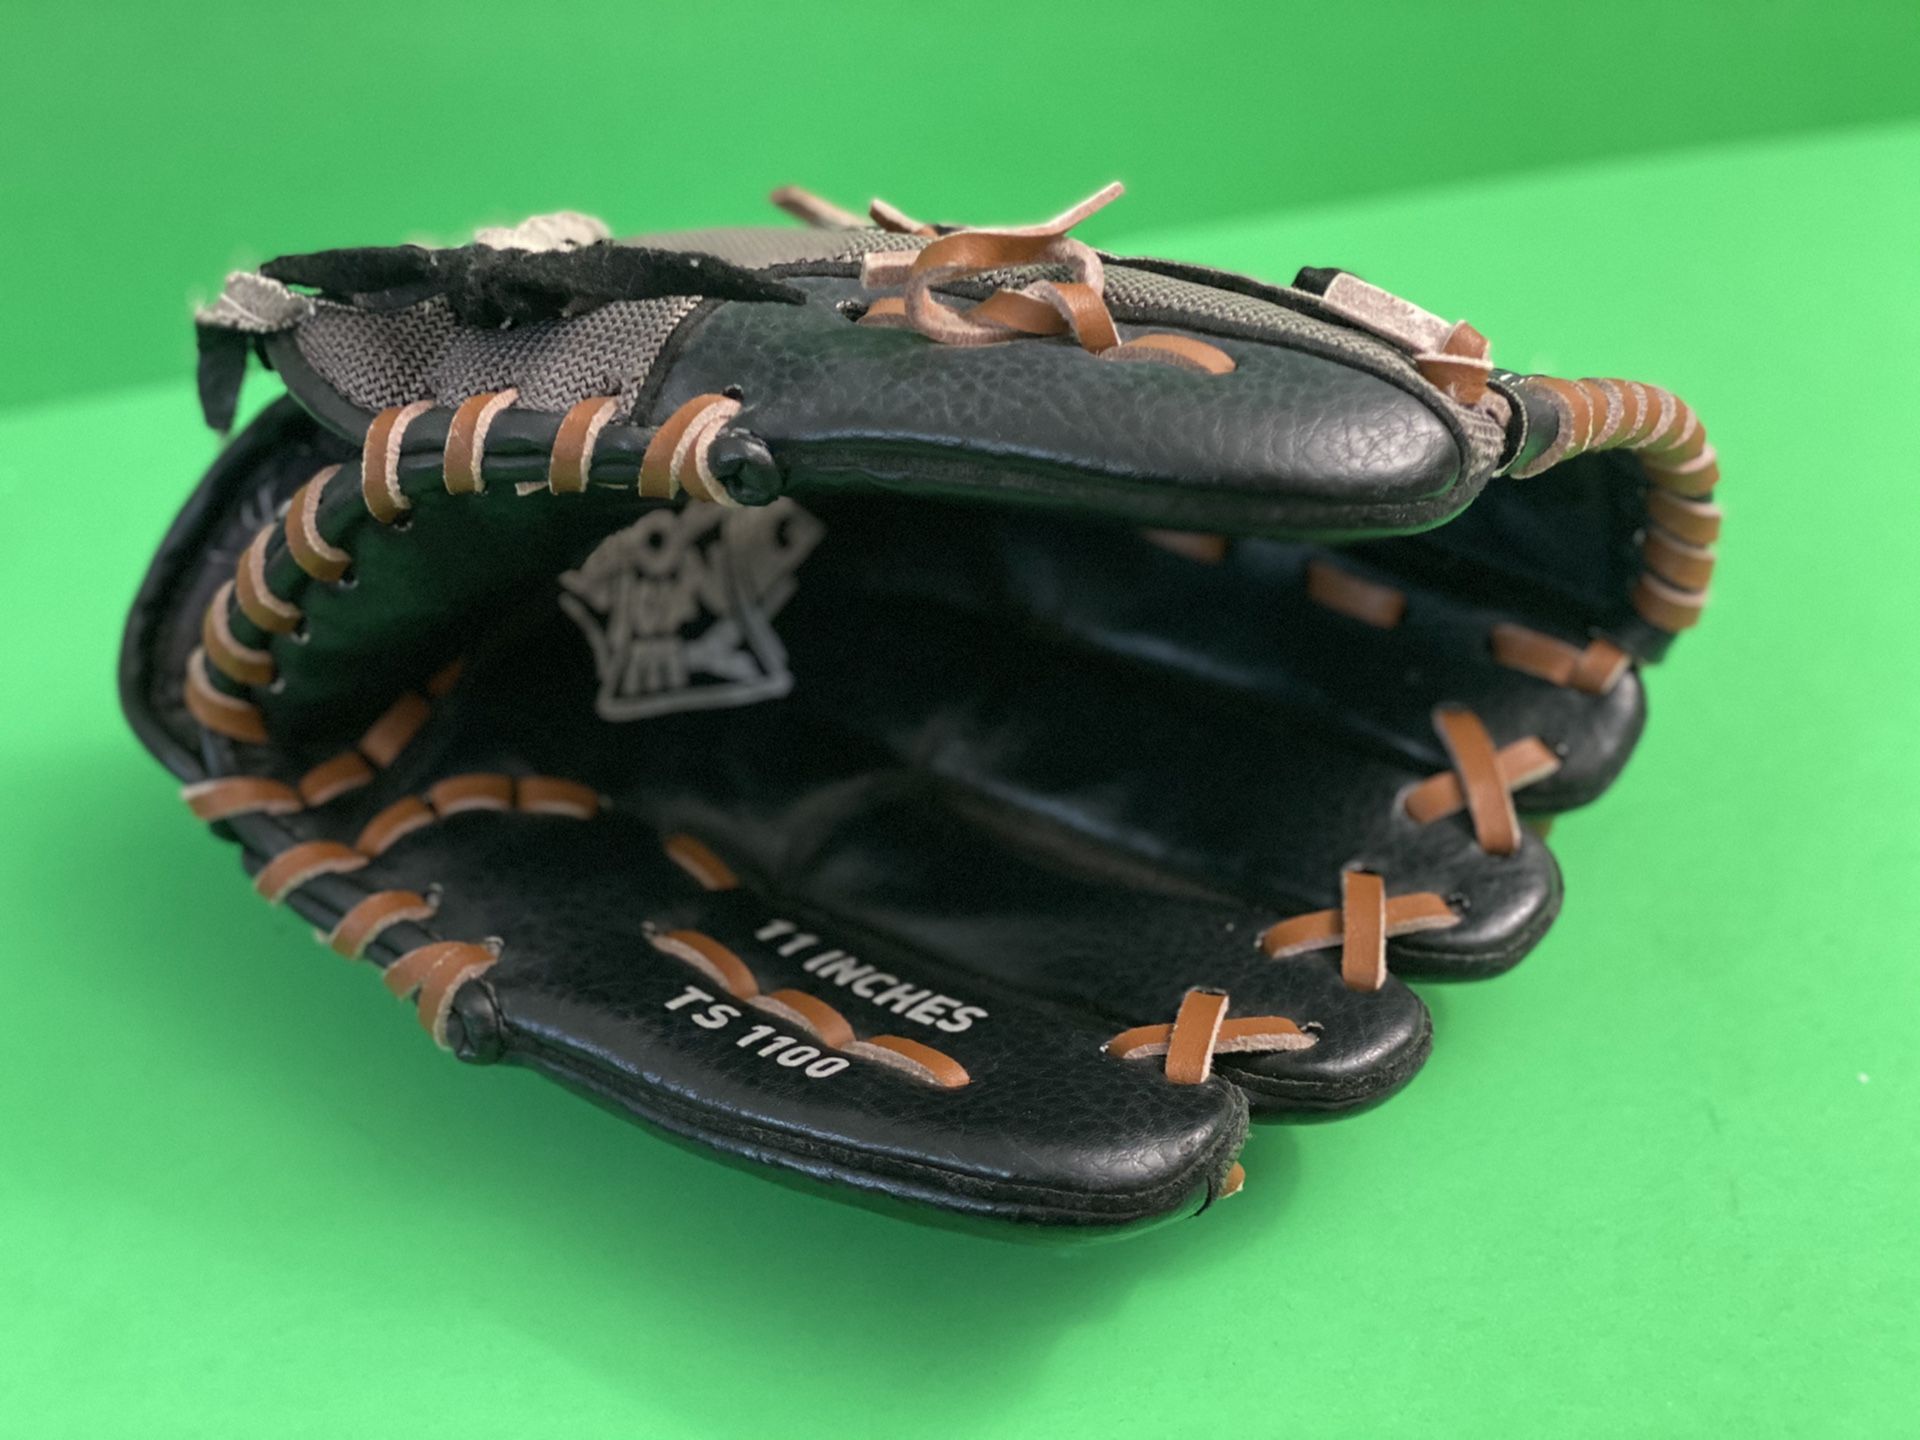 Adidas TS1100 11 inch Baseball Glove